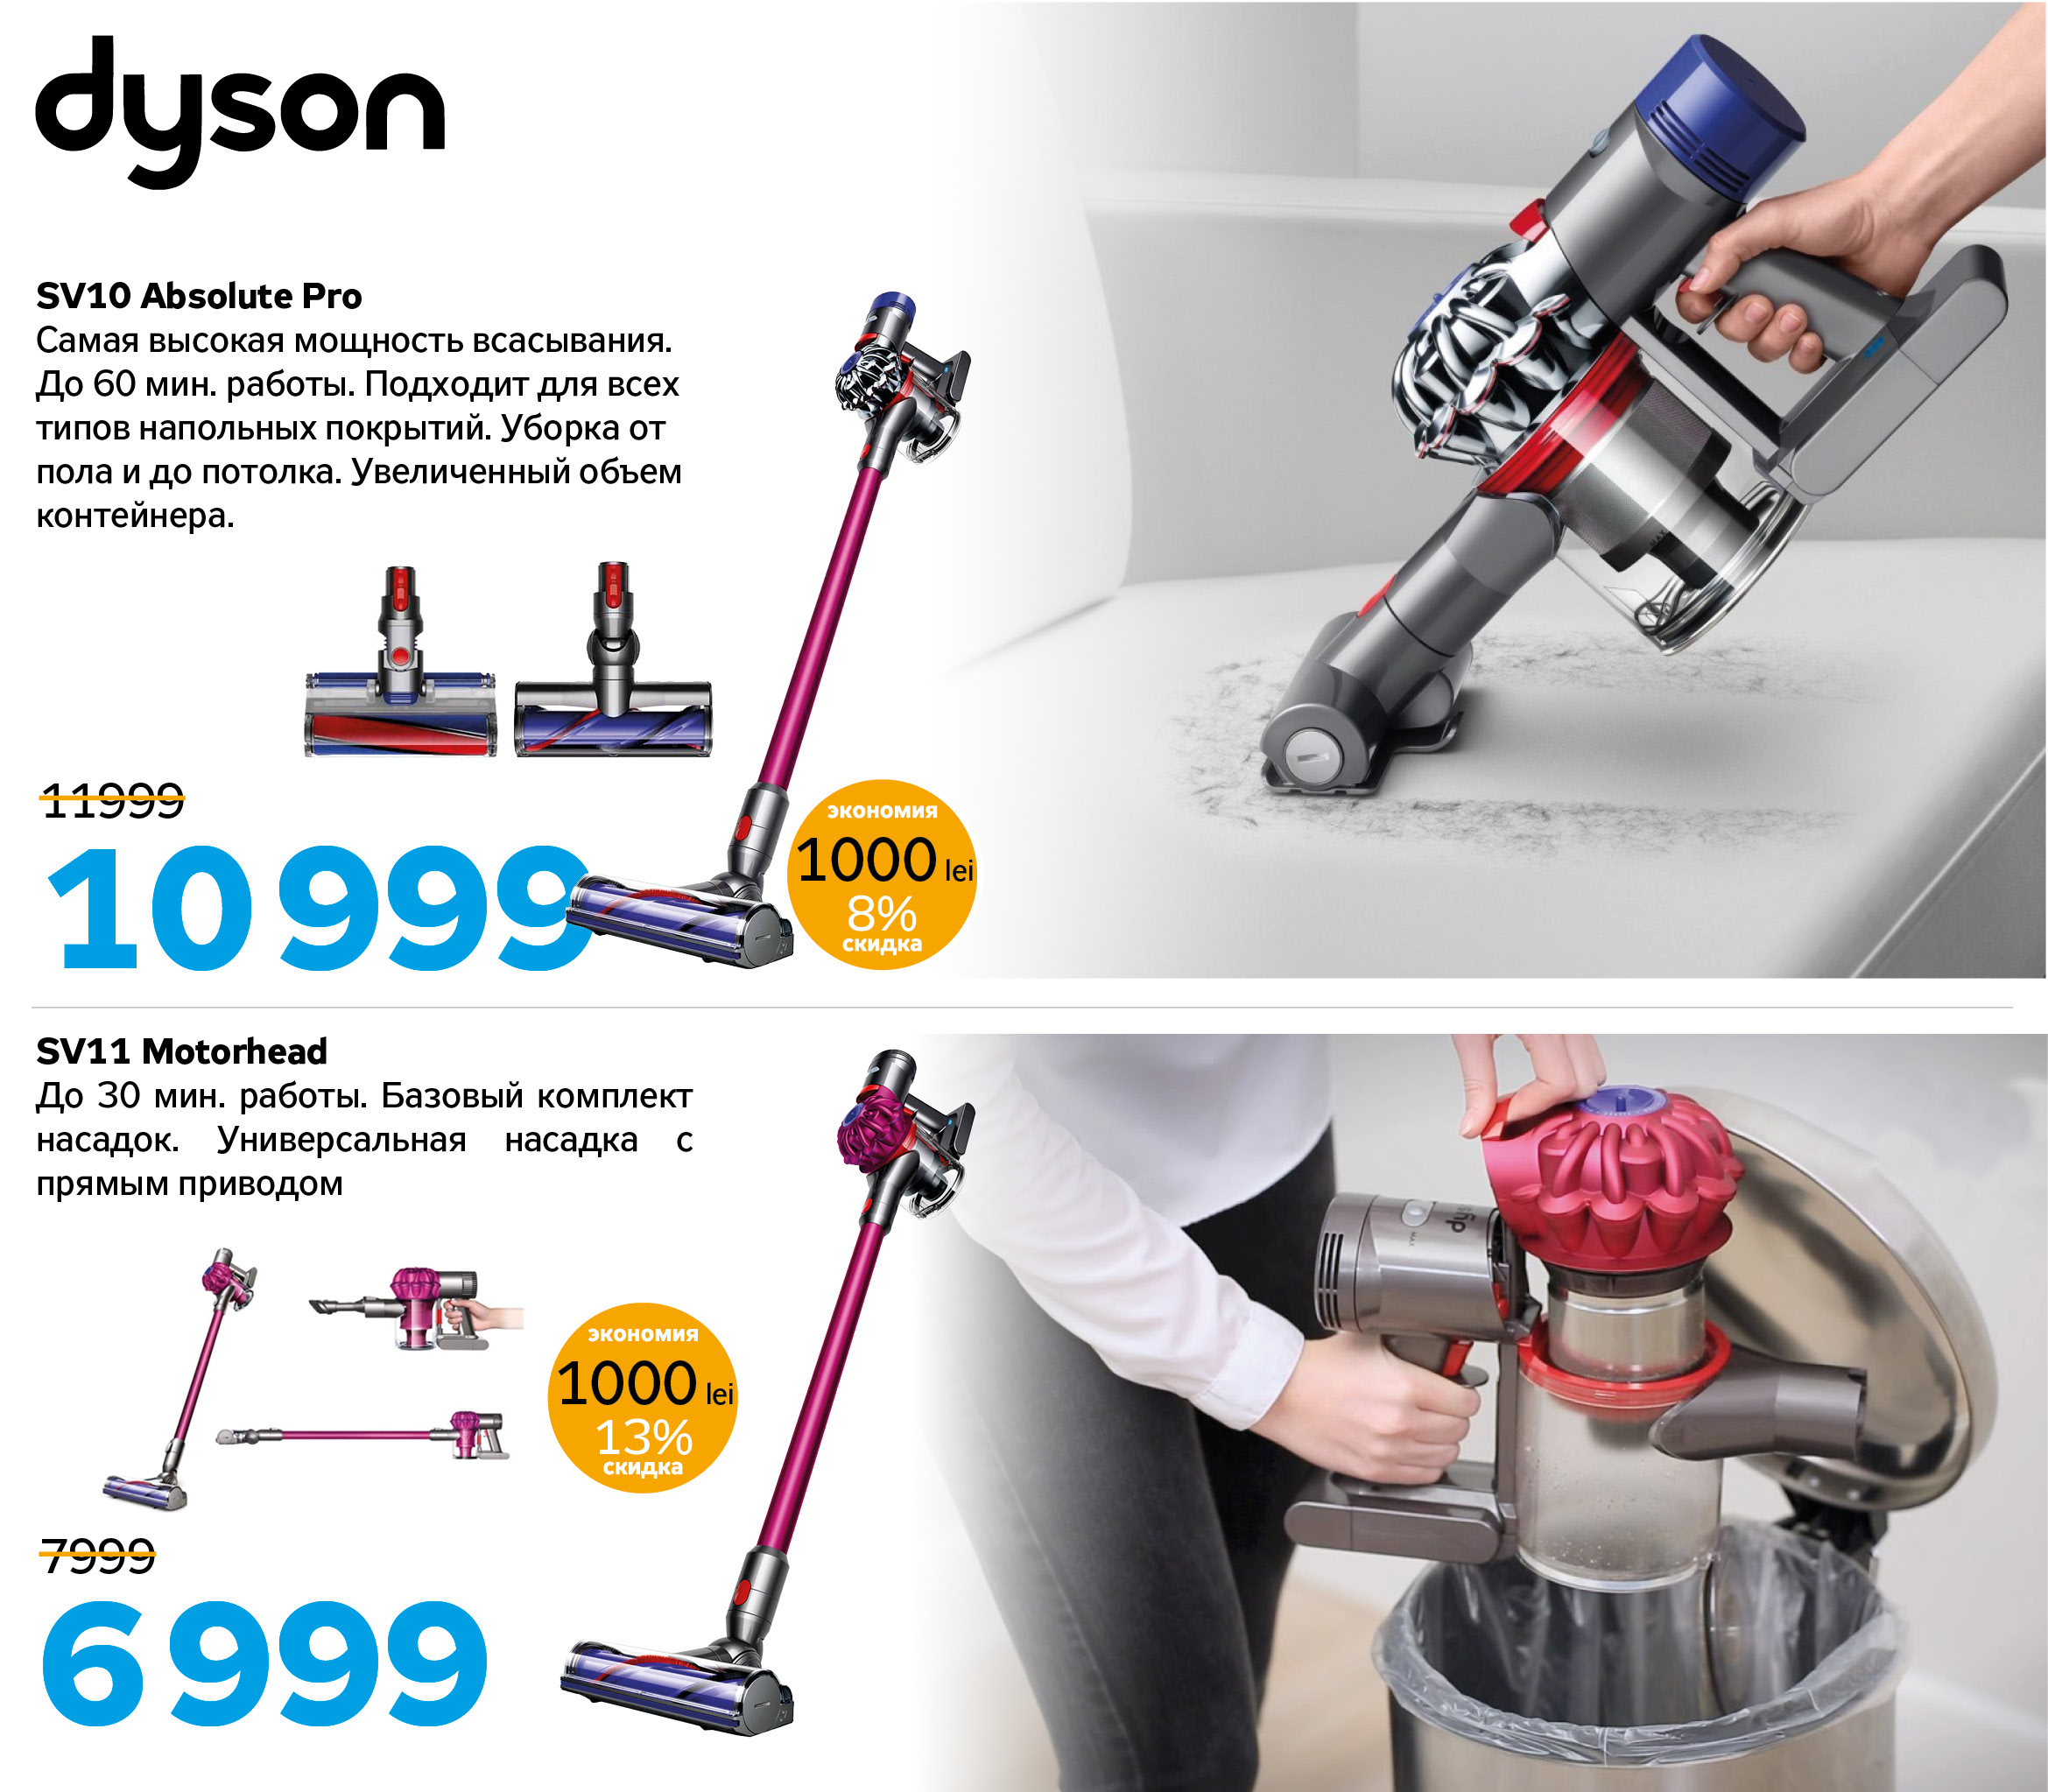 Купить магазин дайсон. Dyson реклама. Dyson баннер. Дайсон слоган. Слоган пылесосов Dyson.